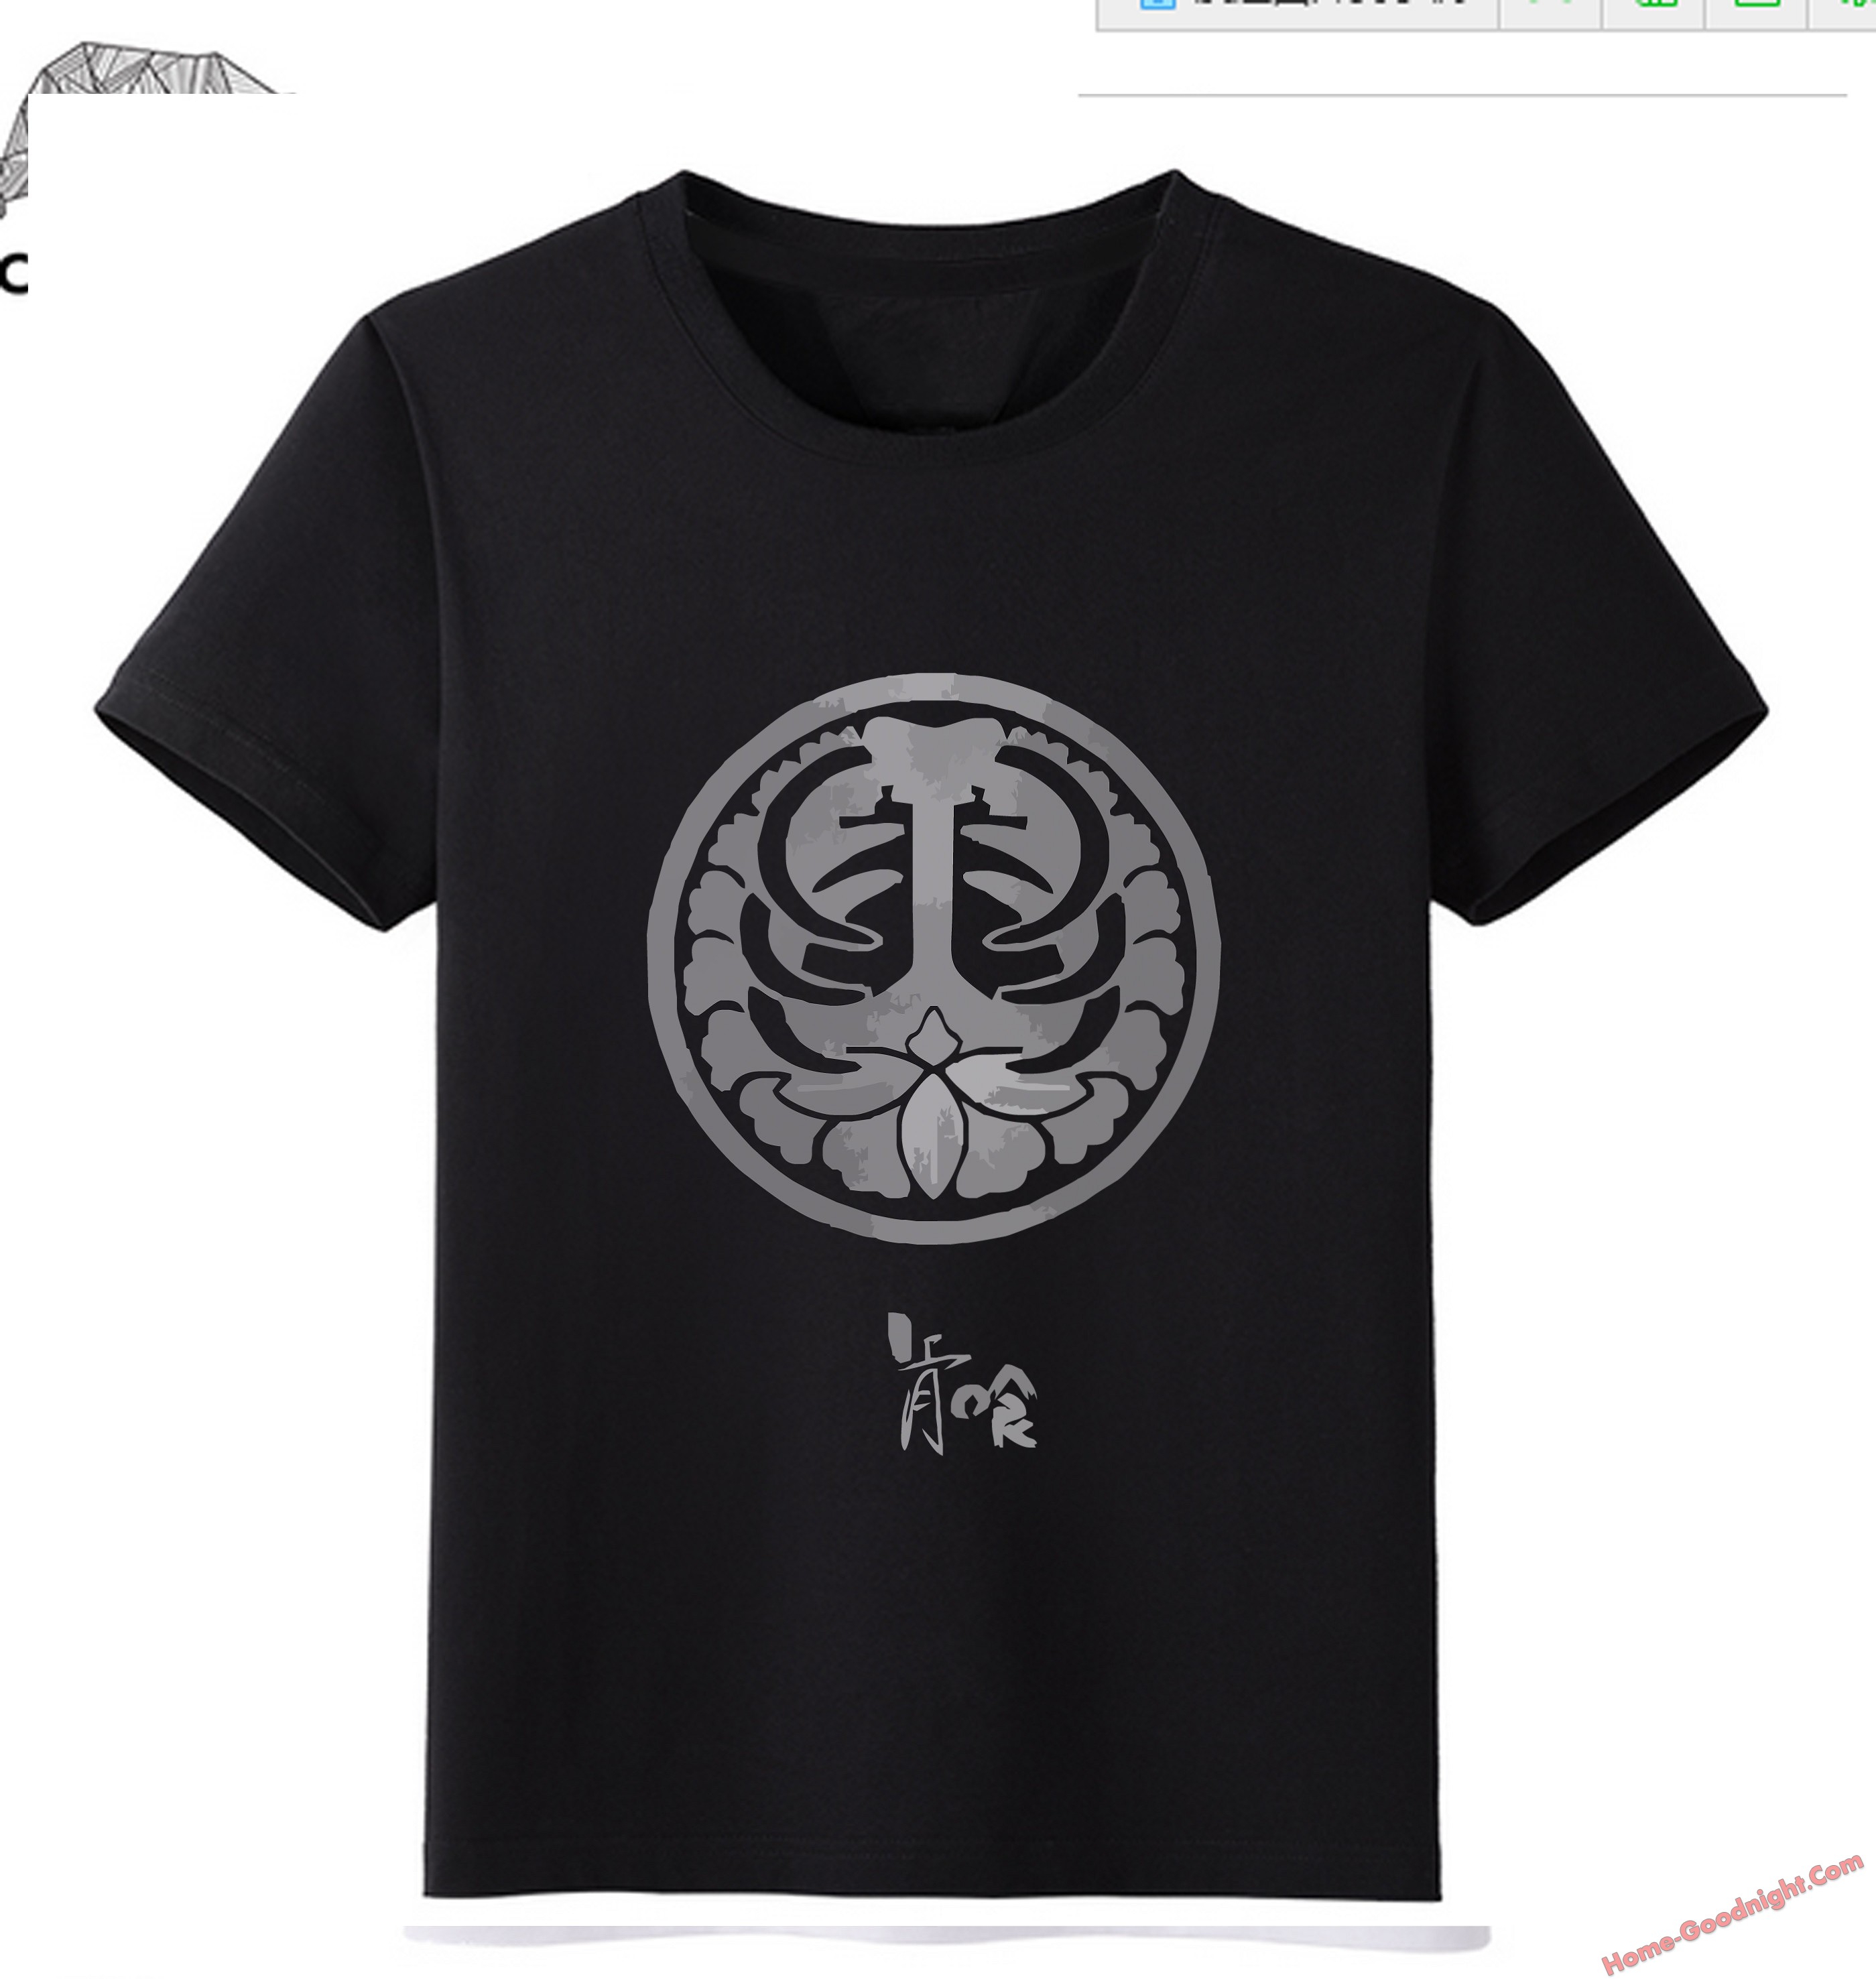 Black - Touken Ranbu Online Men Anime Fashion T-shirts